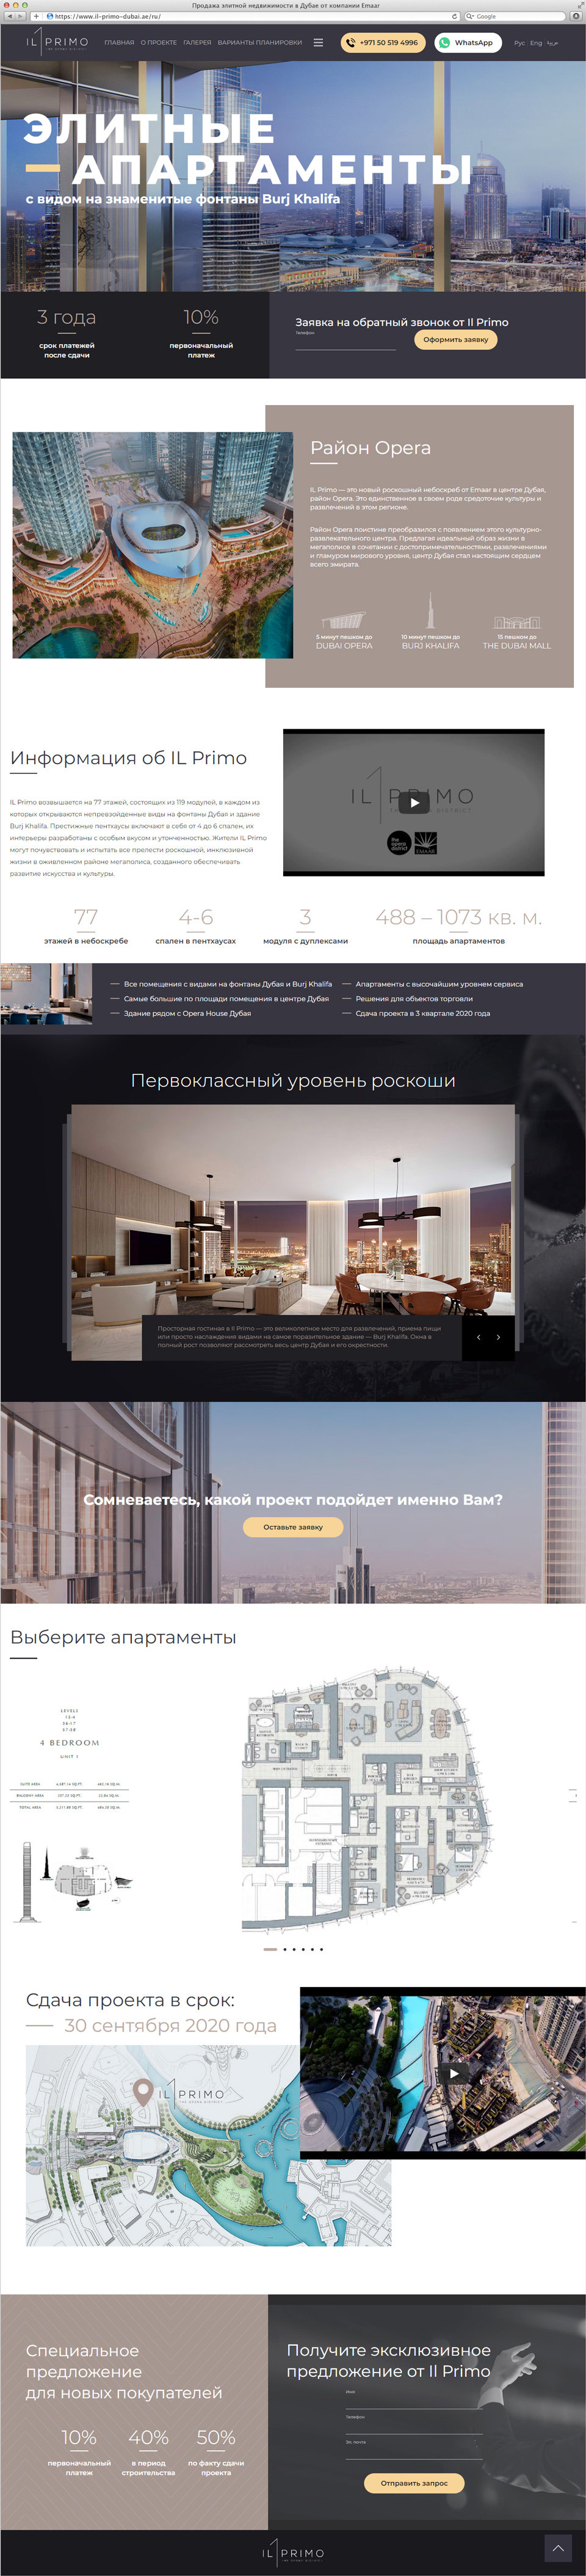 Раскрутка и создание сайта о новом небоскребе Il Primo в Дубае 4